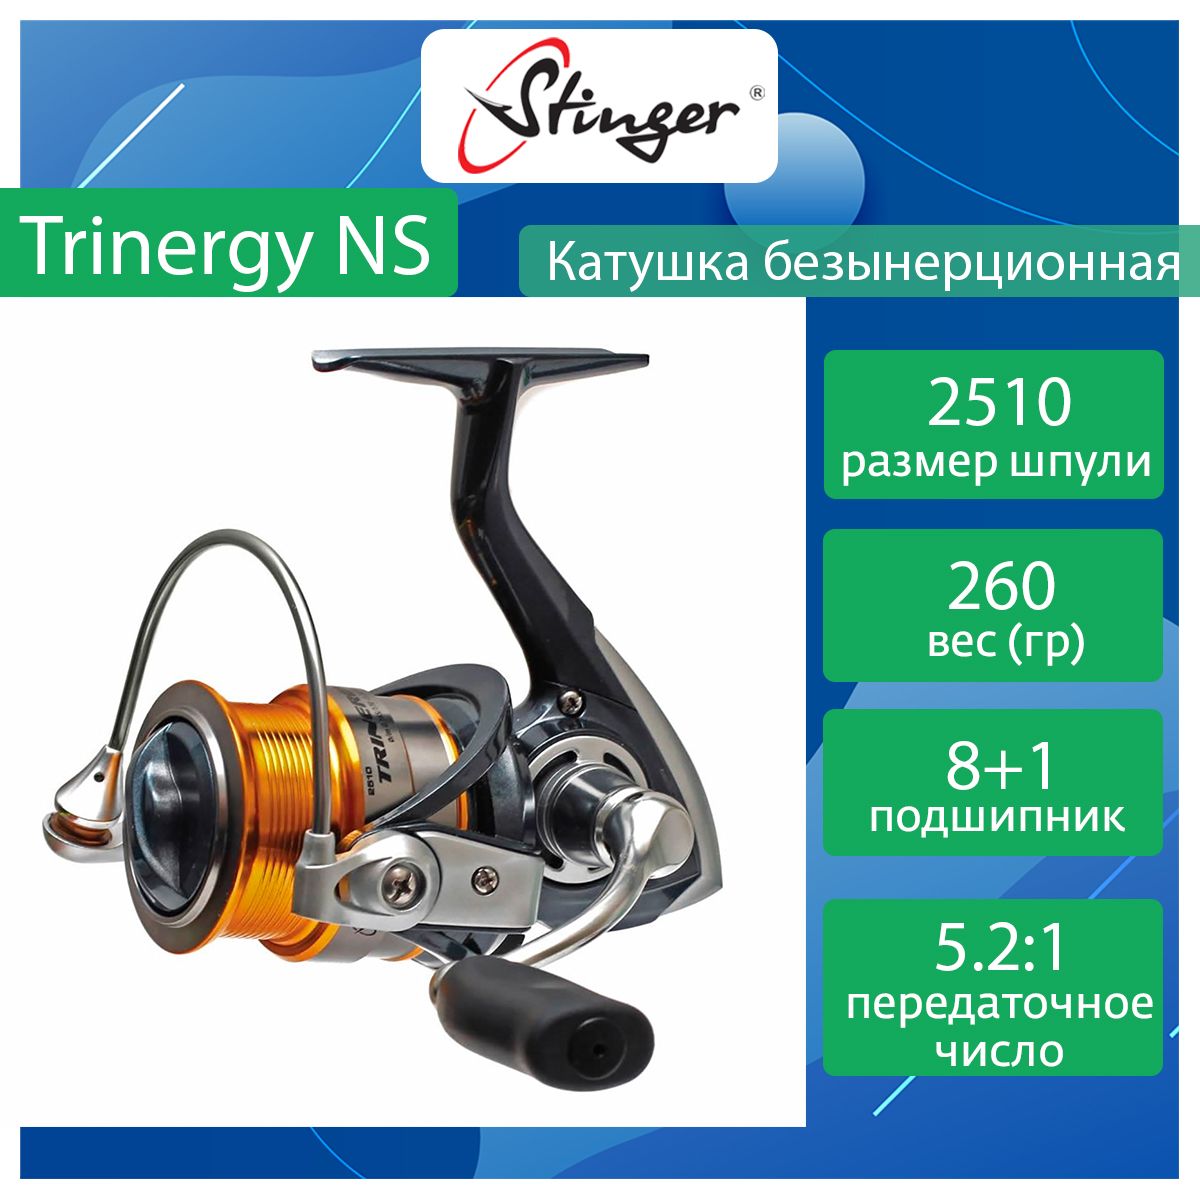 Катушка для рыбалки безынерционная Stinger Trinergy NS ef55180